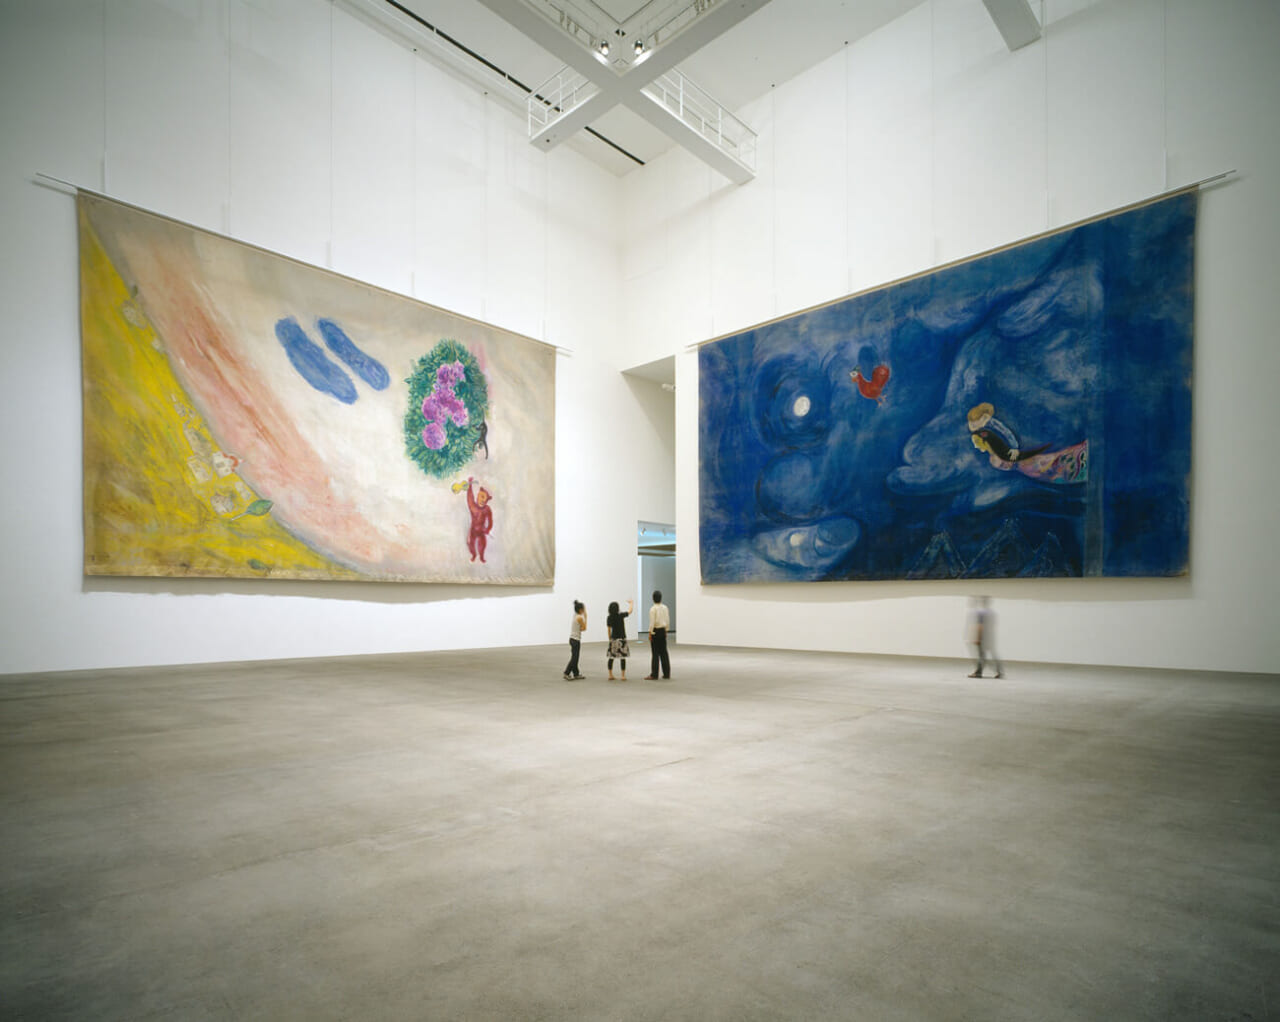 マルク・シャガール　バレエ『アレコ』のための背景画
第１幕《月光のアレコとゼンフィラ》（右）、
第２幕《カーニヴァル》（左）、1942年
© ADAGP, Paris & JASPAR, Tokyo, 2022, Chagall®   G2896